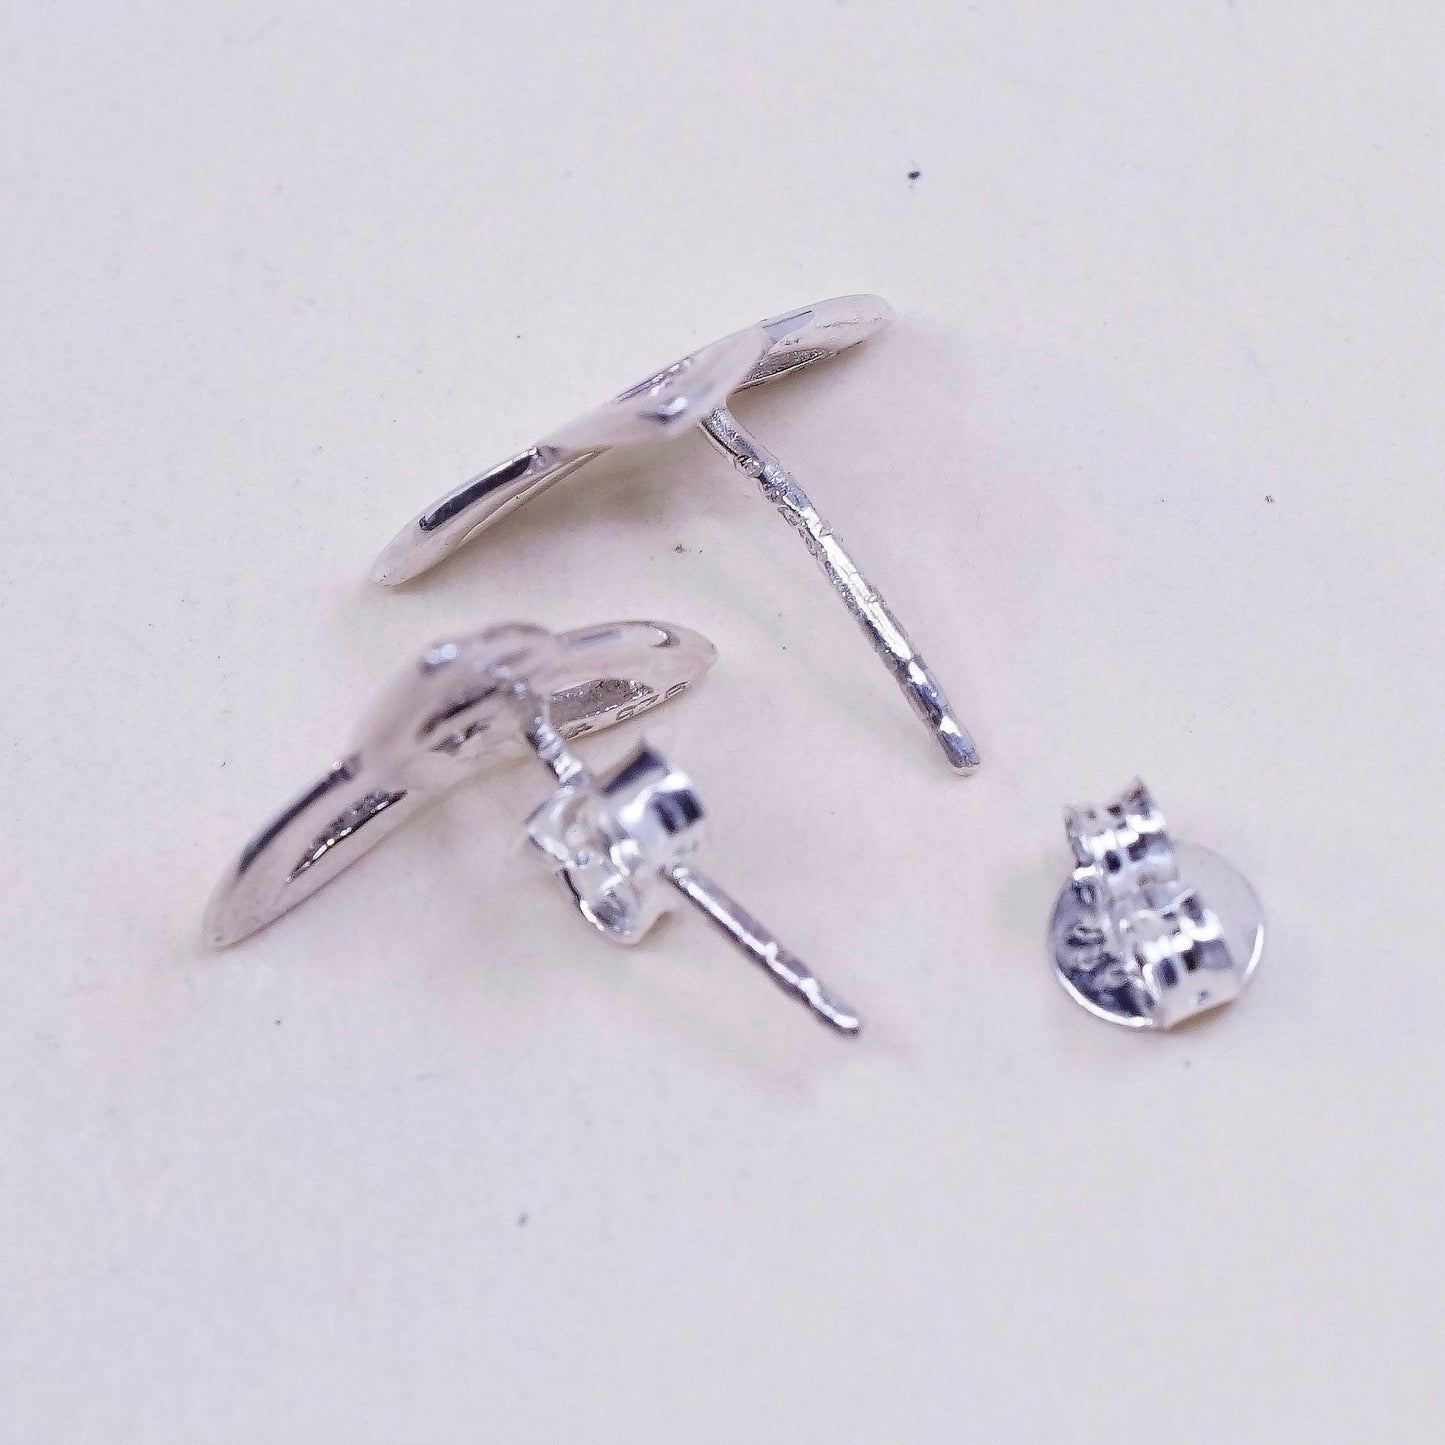 Vintage Sterling silver handmade earrings, irish 925 knot studs, stamped 925